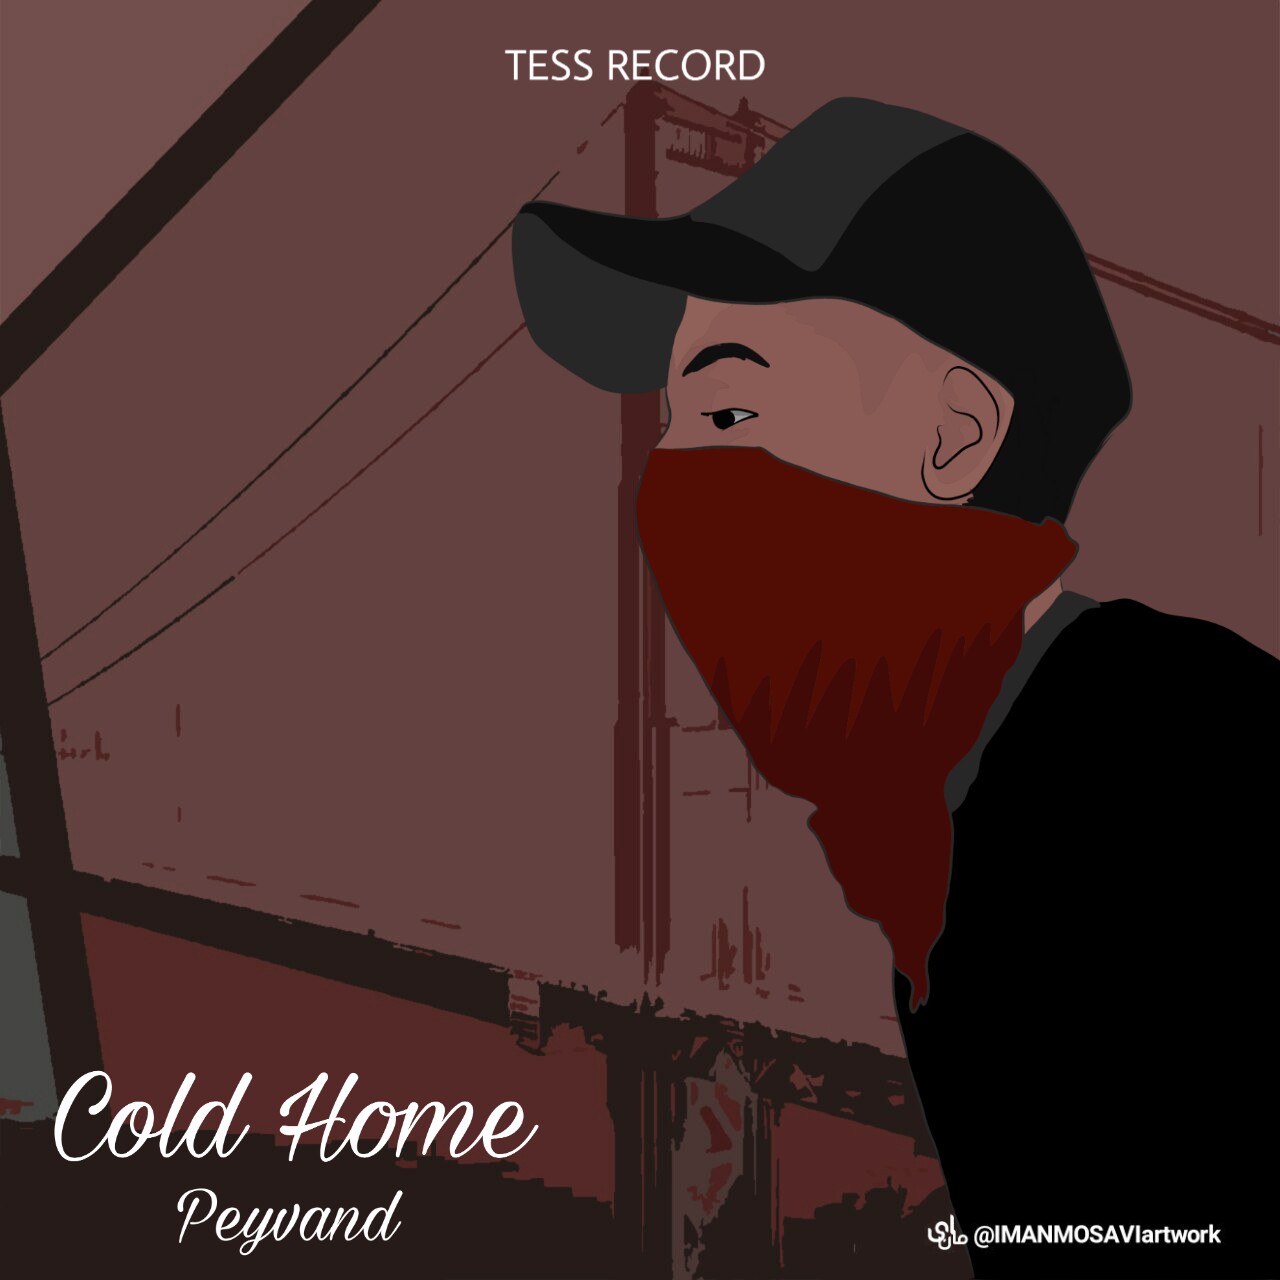 آهنگ جدید پیوند به نام حضانت از آلبوم Cold Home